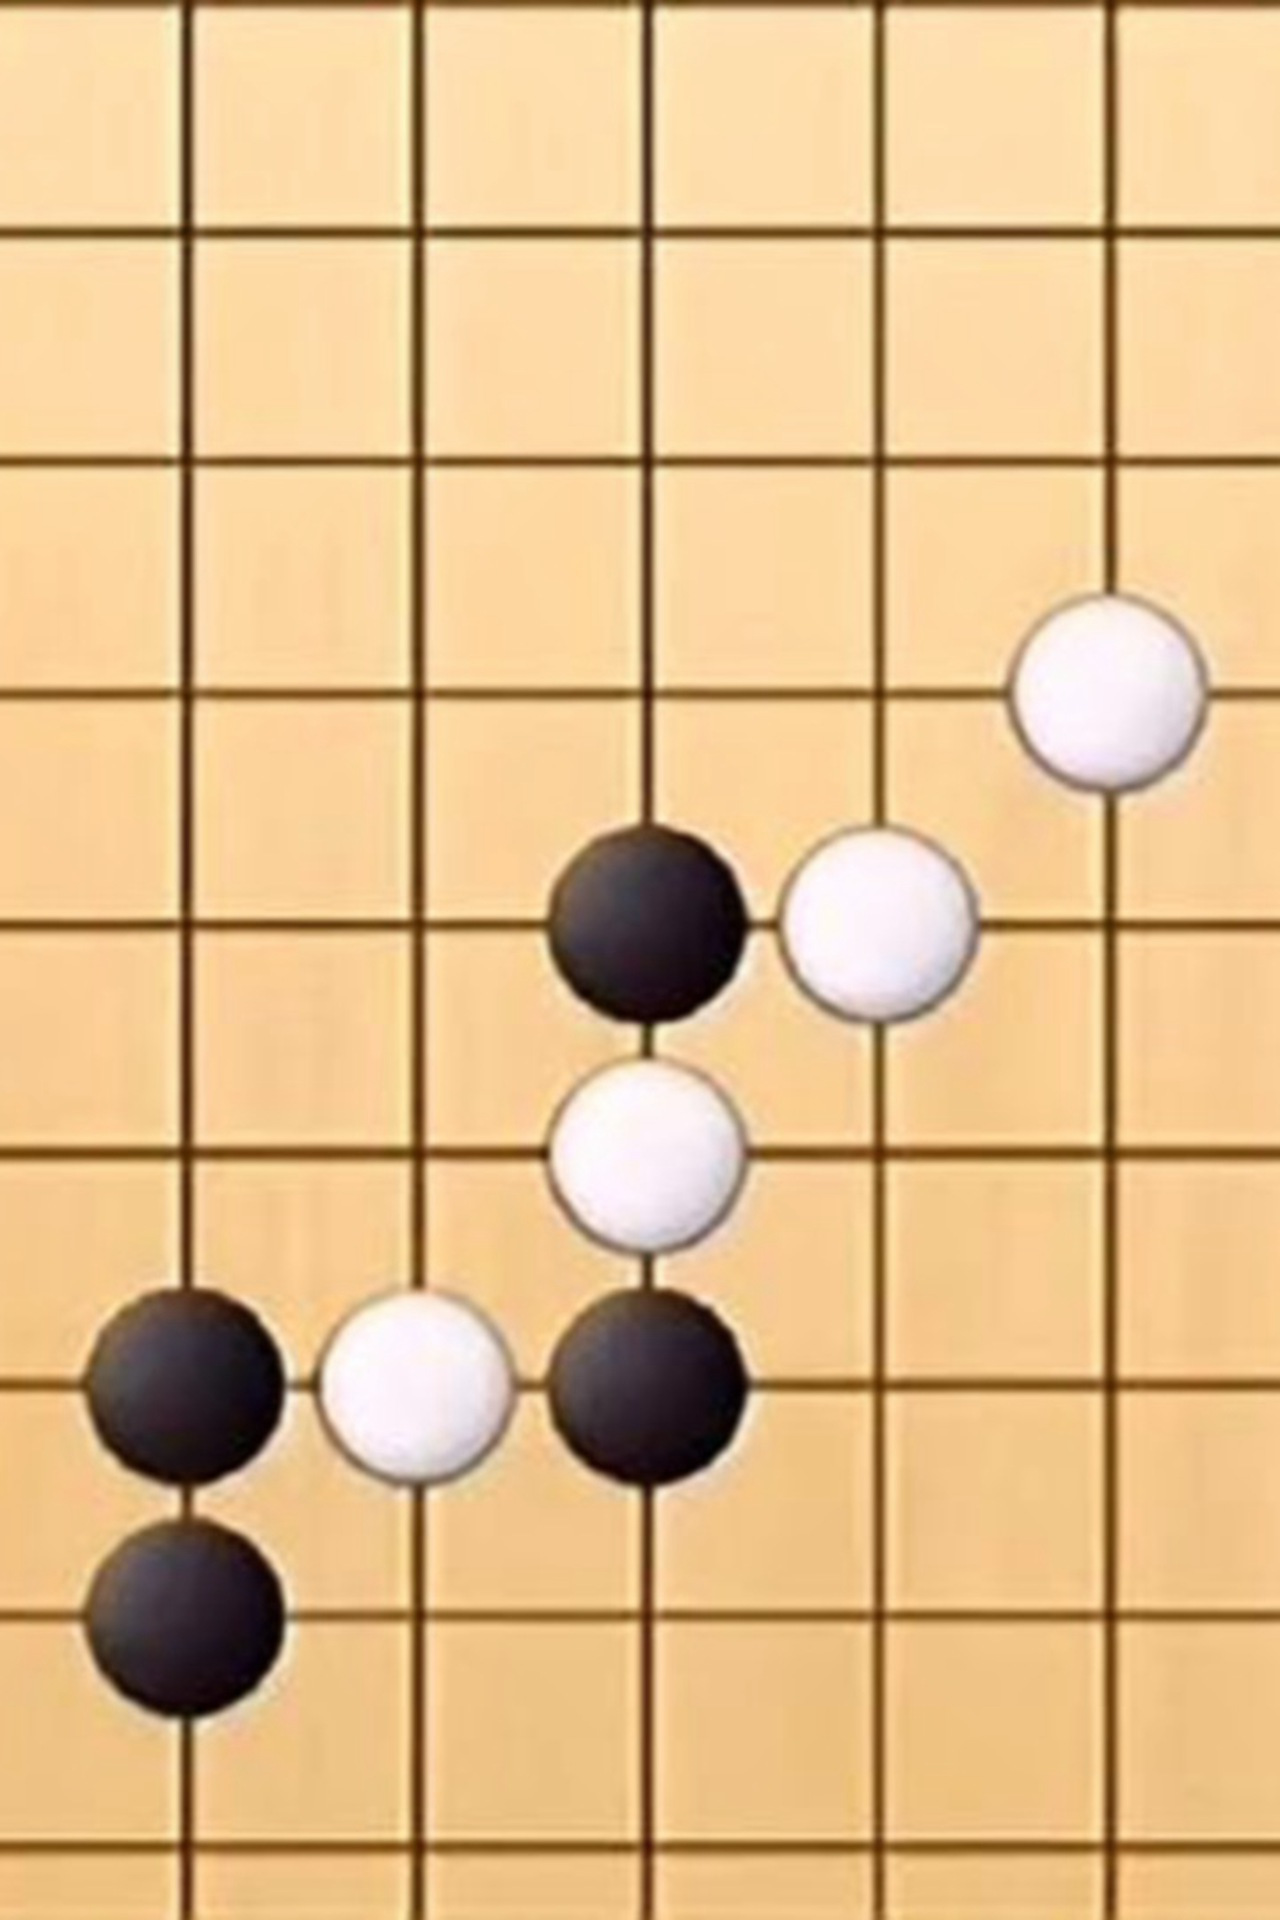 简易五子棋（包含开始、双人对战、简易AI、悔棋、认输、判断输赢）不含禁手